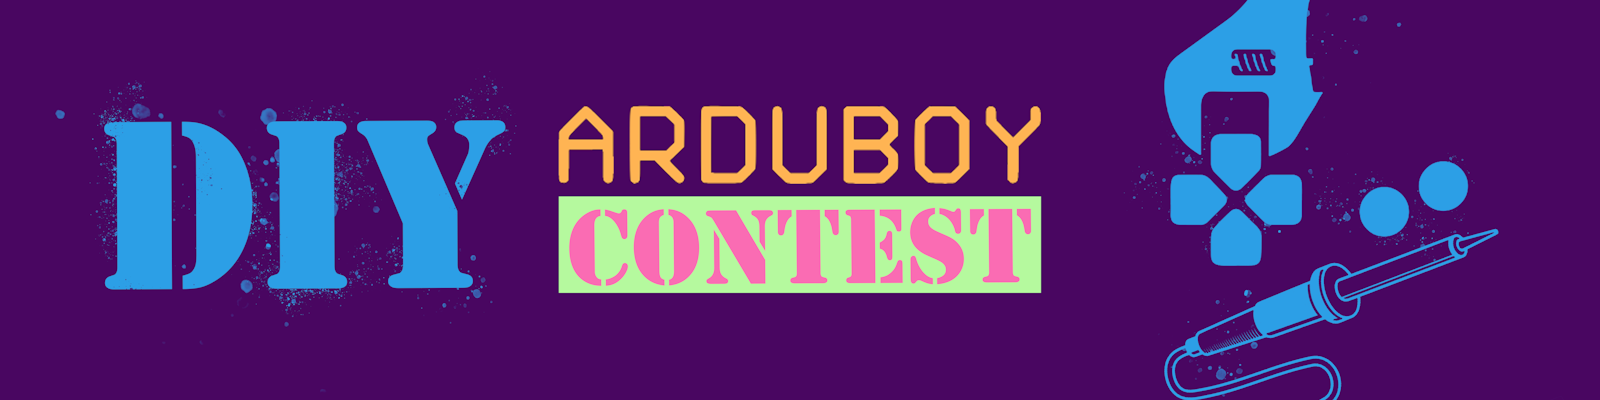 DIY Arduboy Contest